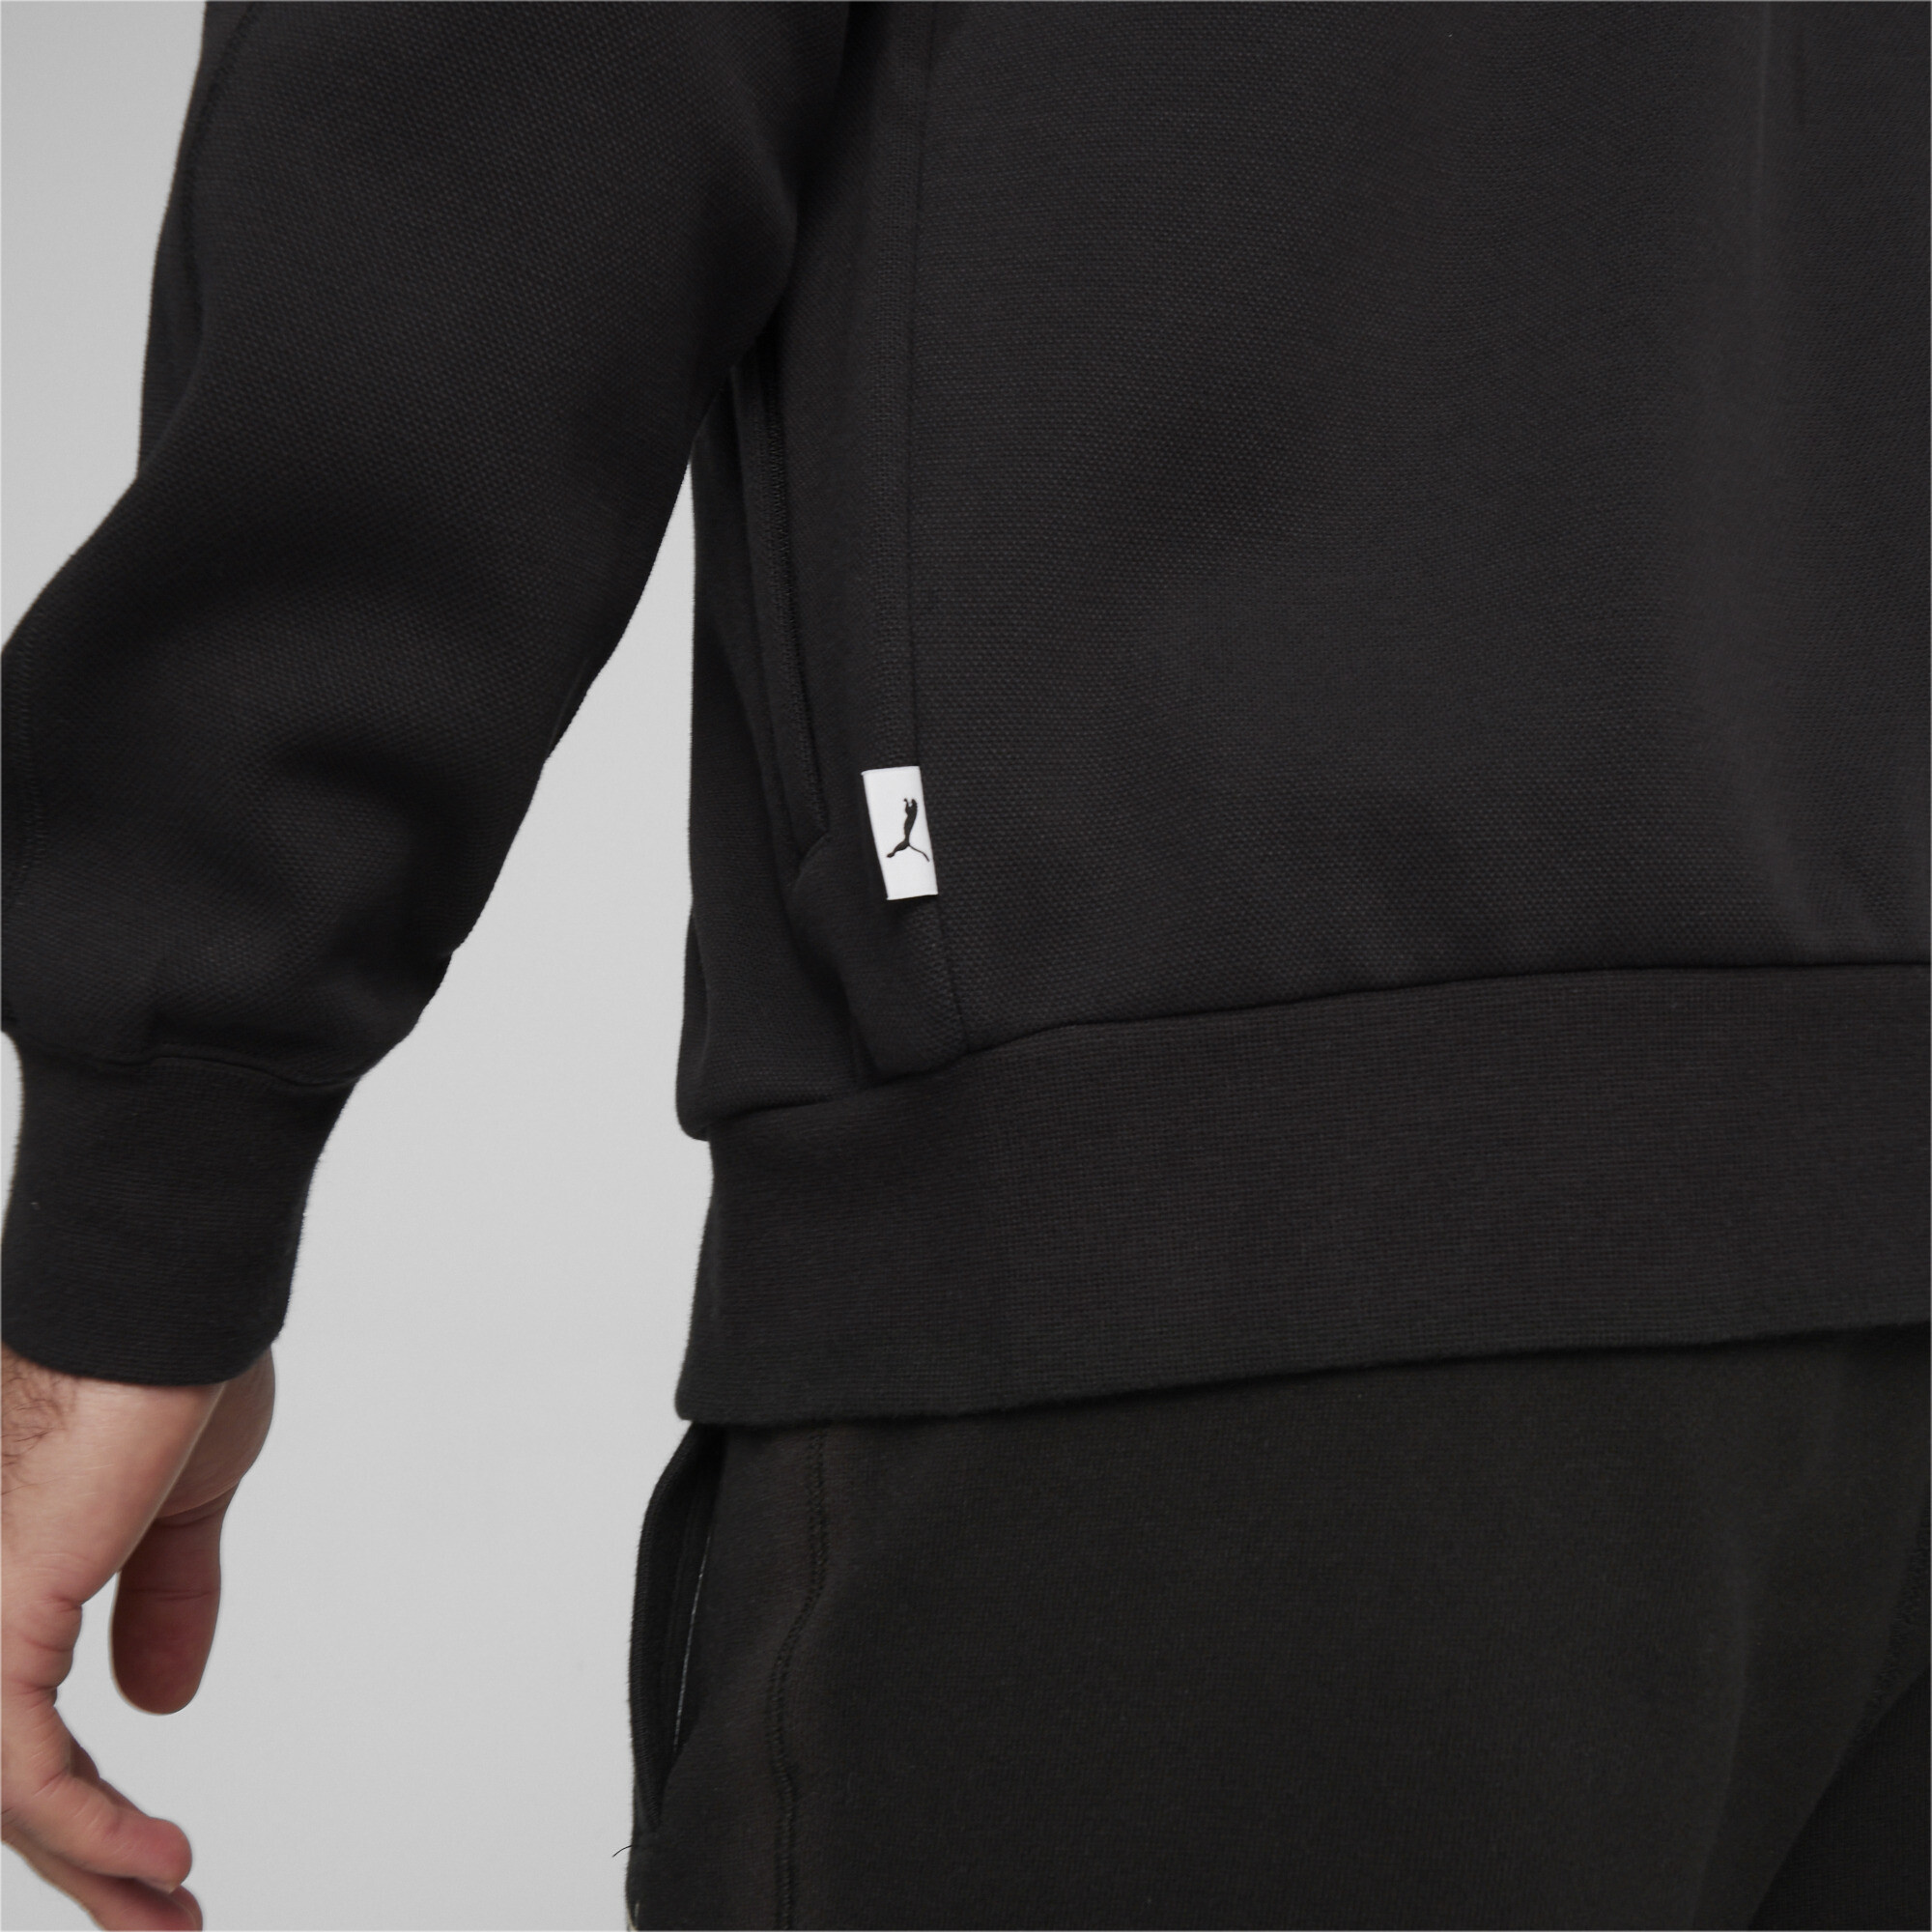 Men's PUMA MMQ T7 Track Jacket In 10 - Black, Size XS